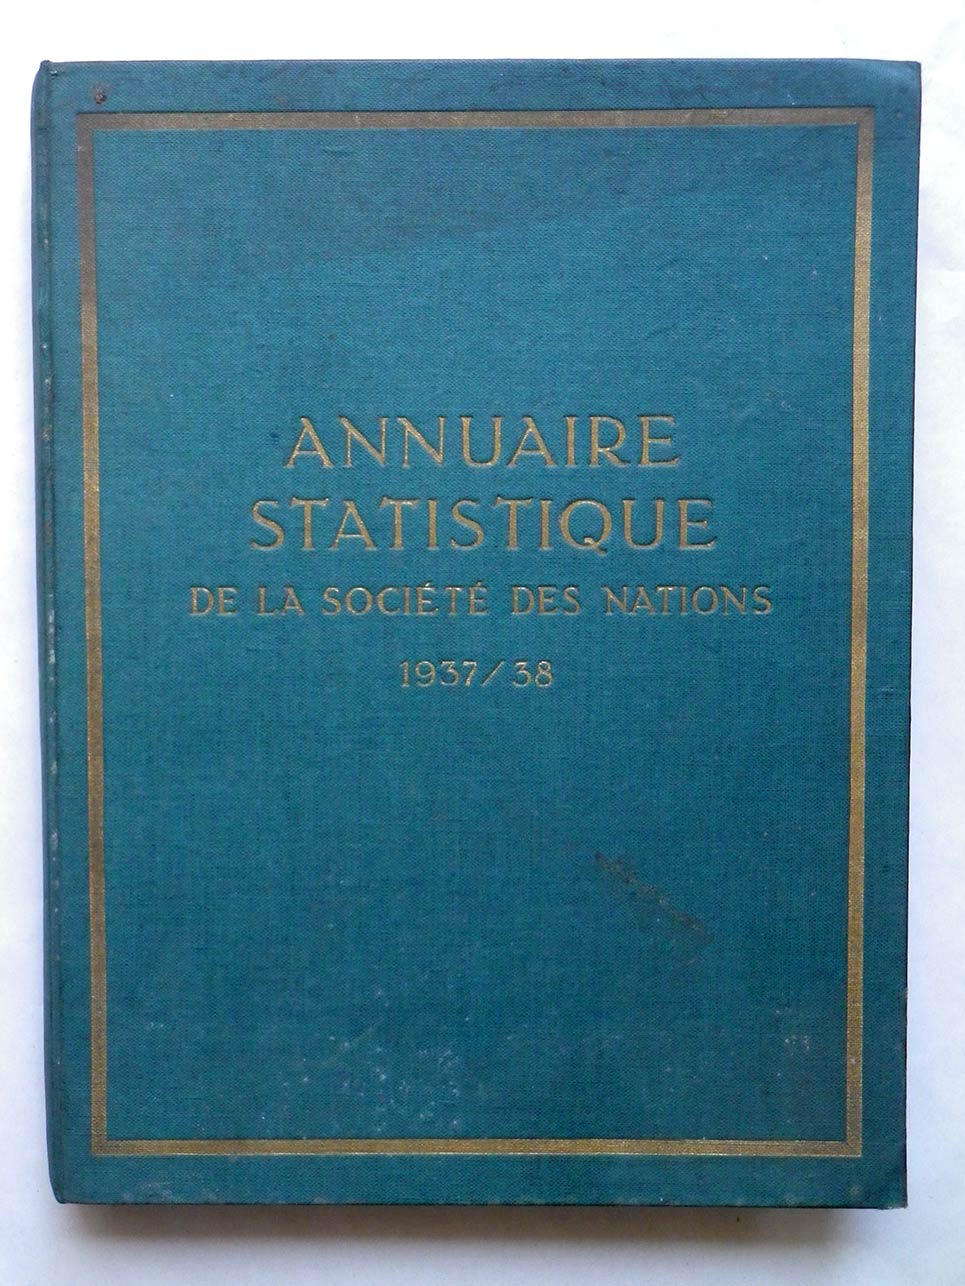 ANNUAIRE STATISTIQUE DE LA SOCIÉTÉ DES NATIONS 1937/38